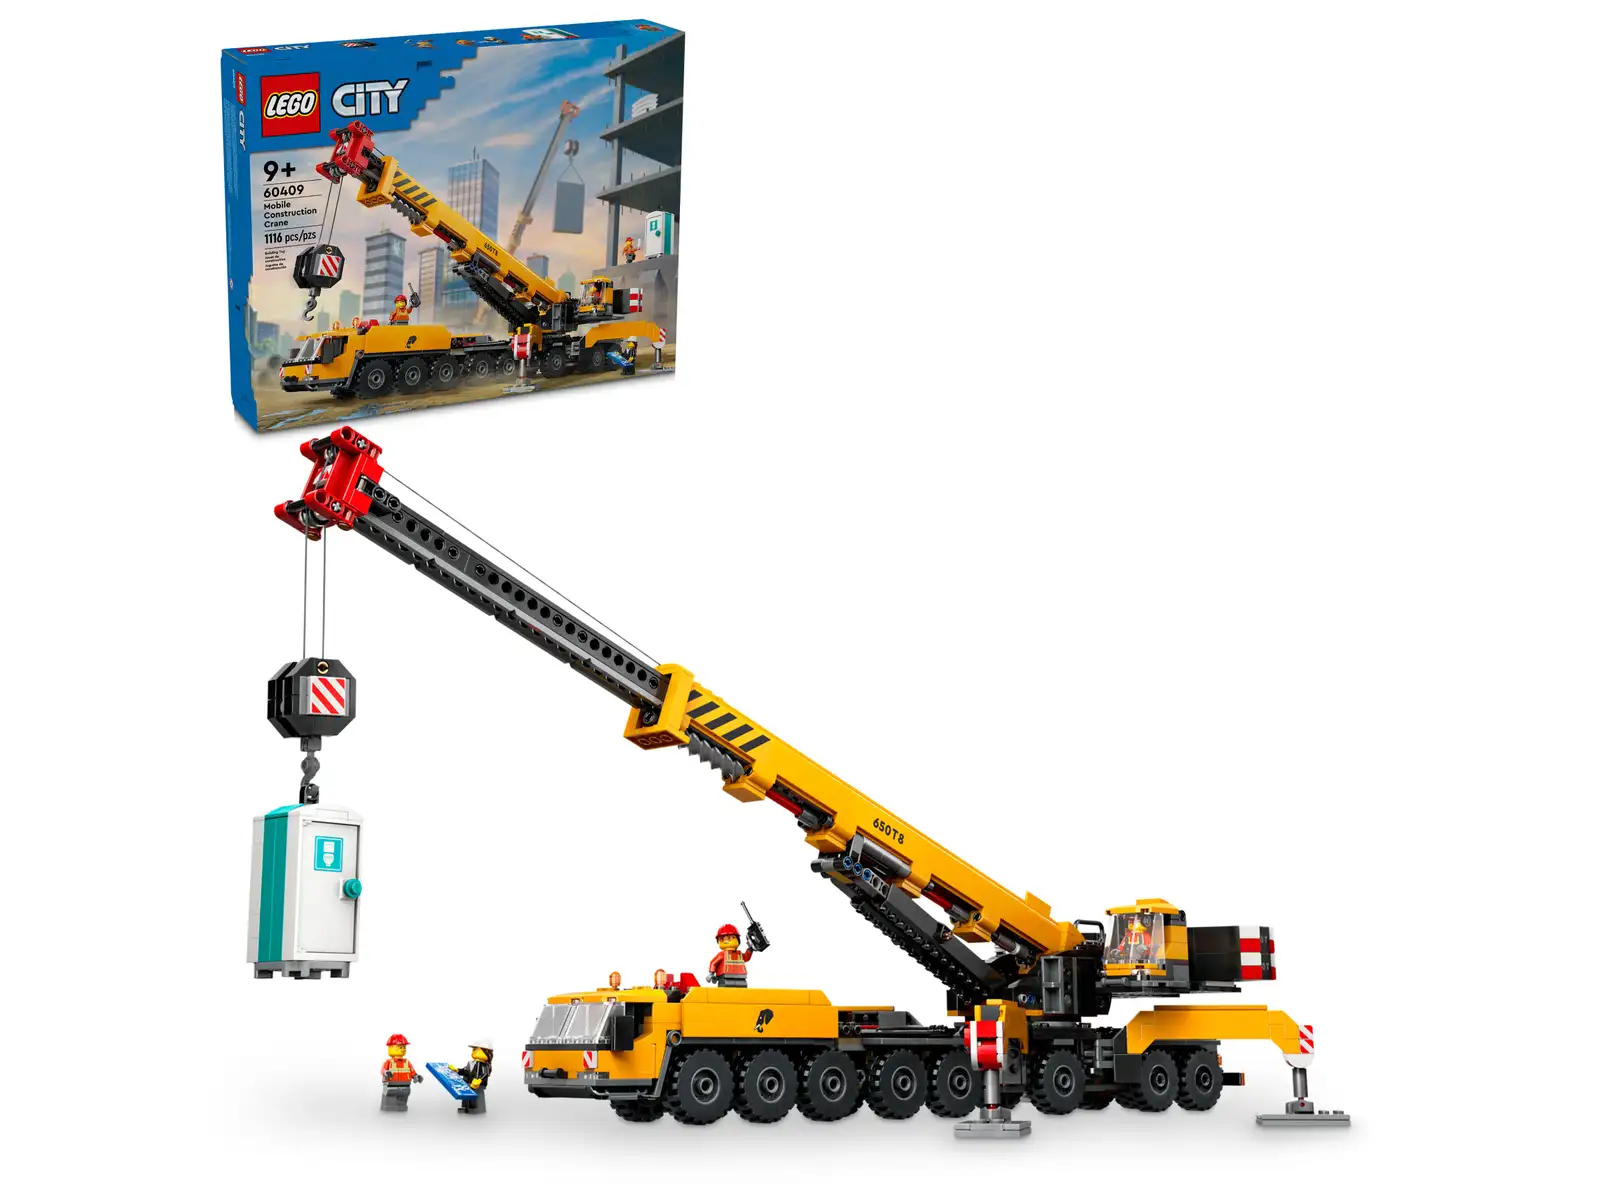 LEGO 60409 Gul mobilkran 60409 - Lego city